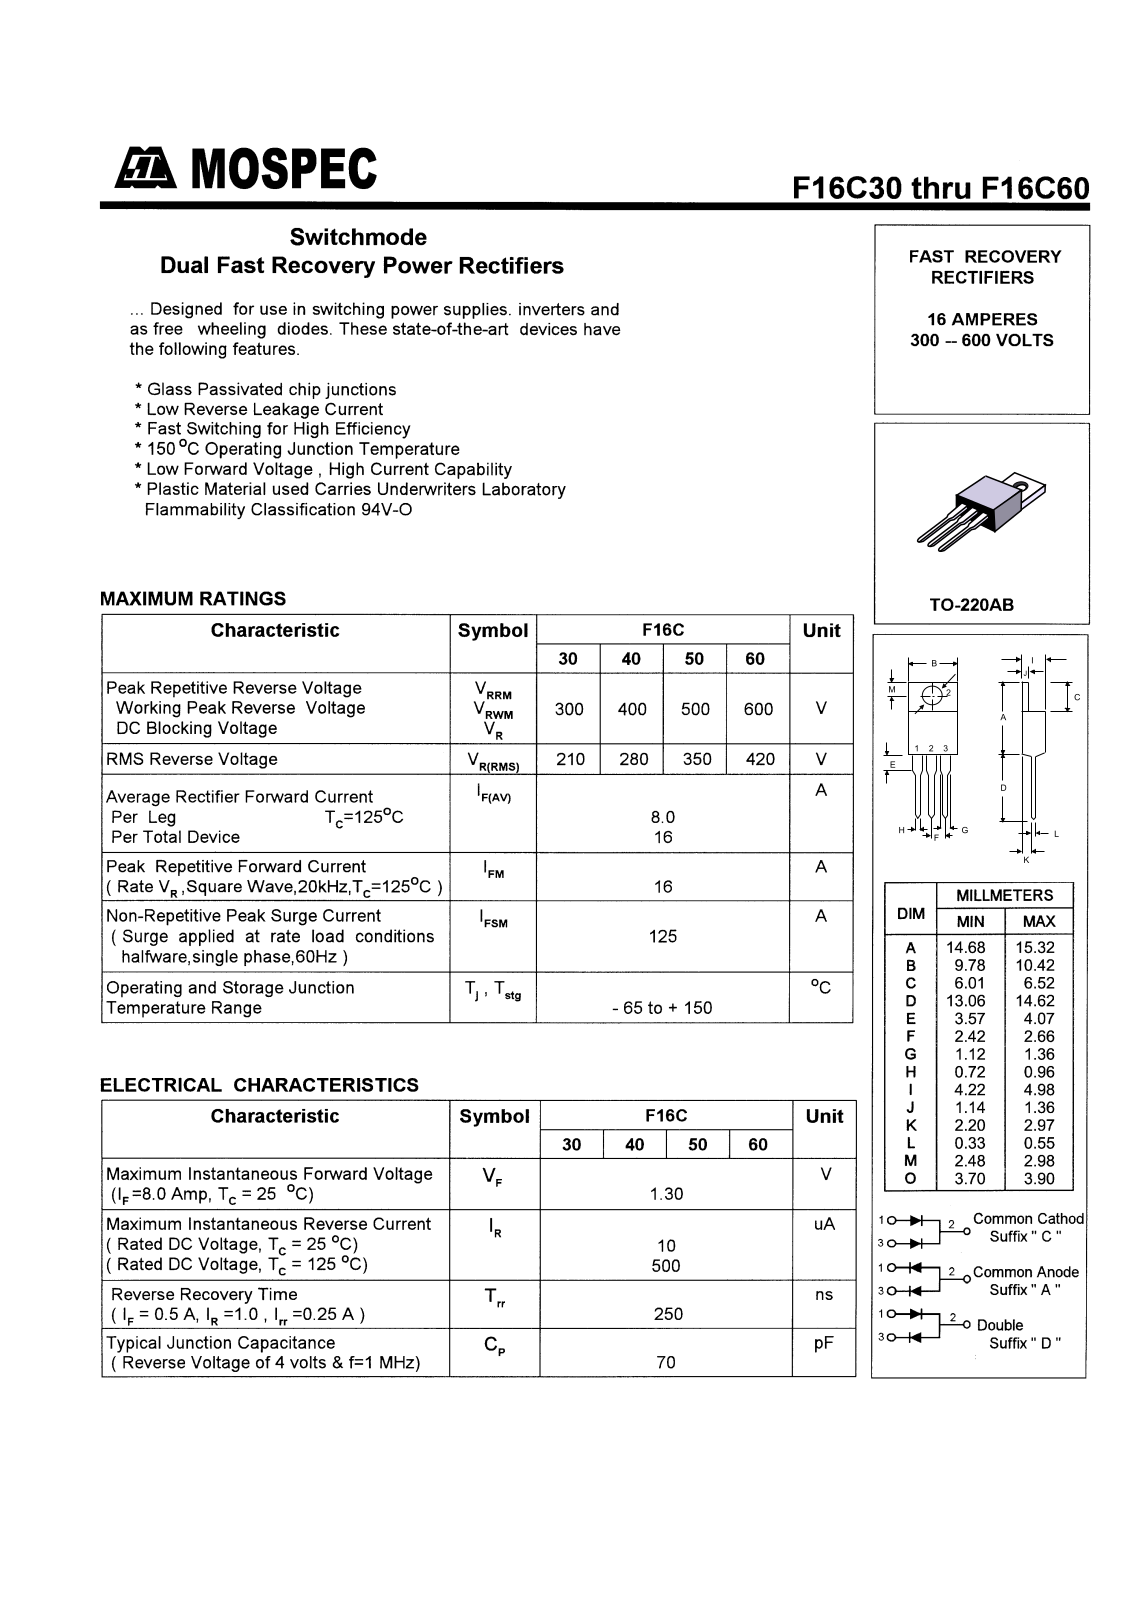 MOSPEC F16C60C, F16C60A, F16C50D, F16C50A, F16C40D Datasheet